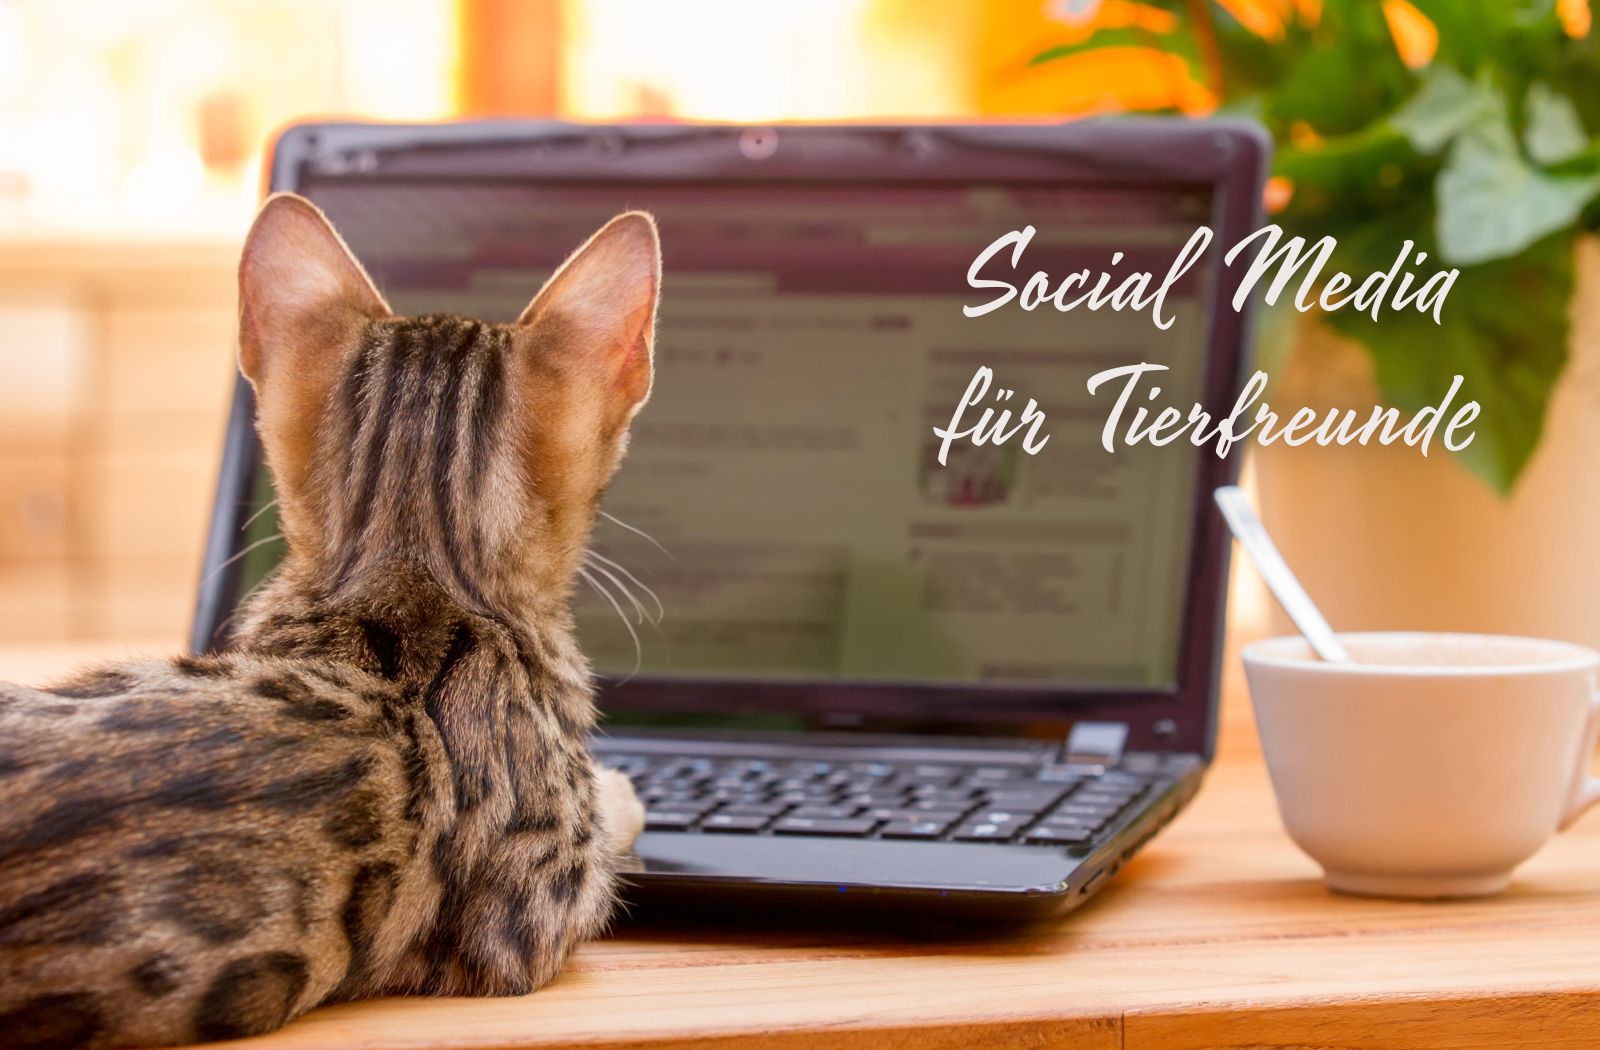 Katze vor Laptop mit Text "Social Media für Tierfreunde"